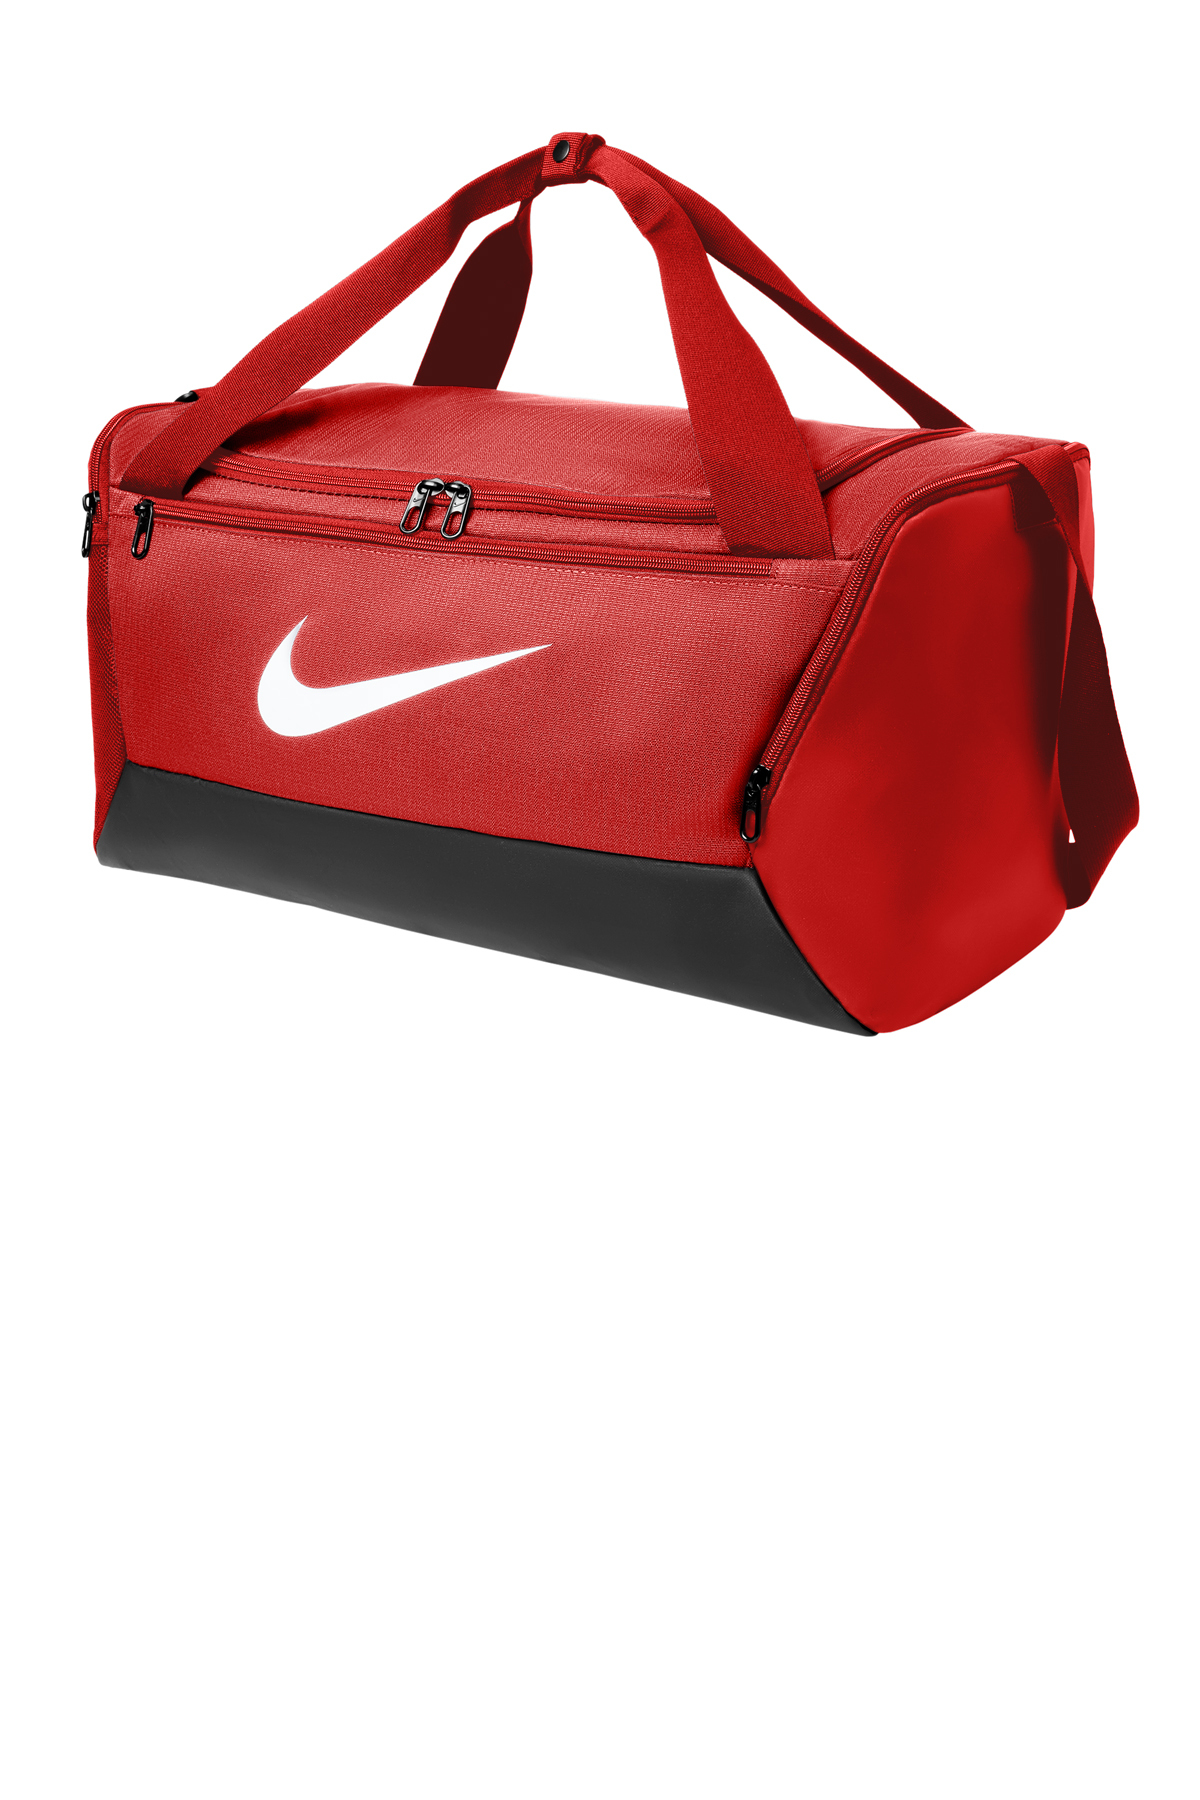 Nike Brasilia Small Duffel NKDM3976 – Victory Sportswear